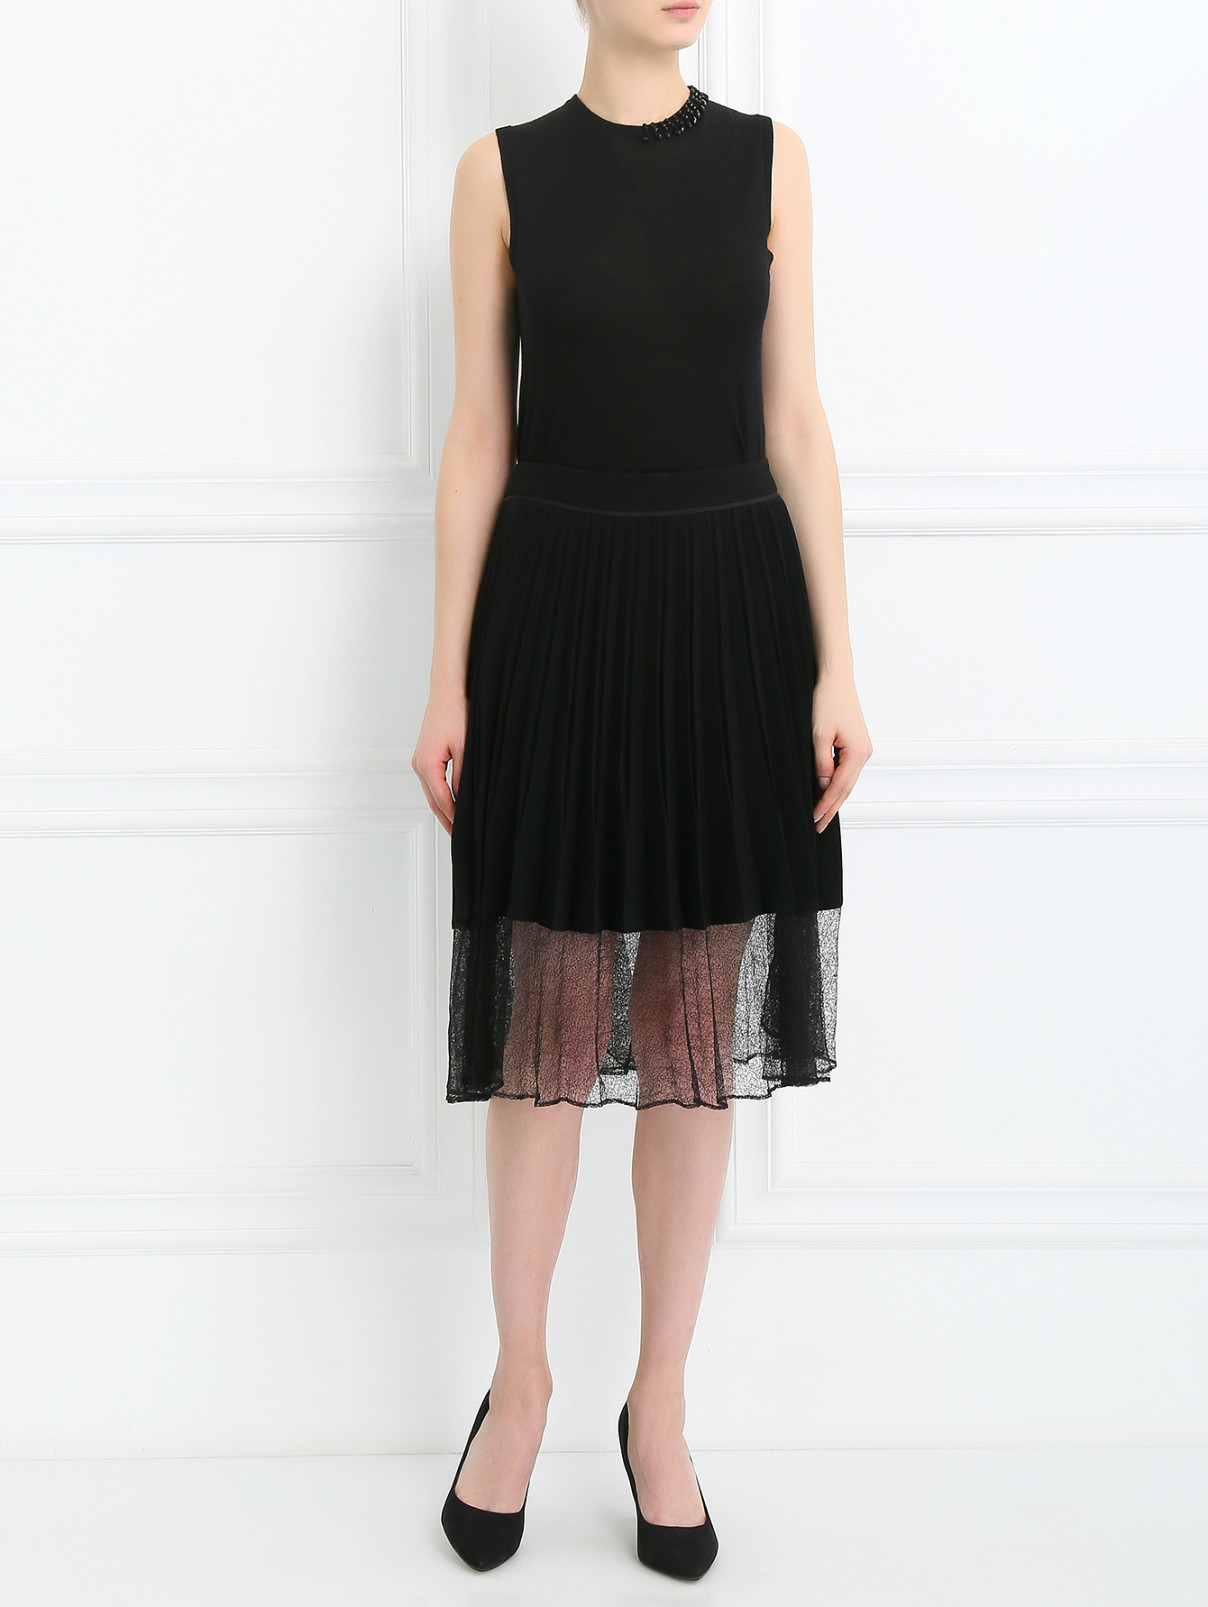 Плиссированная юбка с отделкой из кружева Rag & Bone  –  Модель Общий вид  – Цвет:  Черный